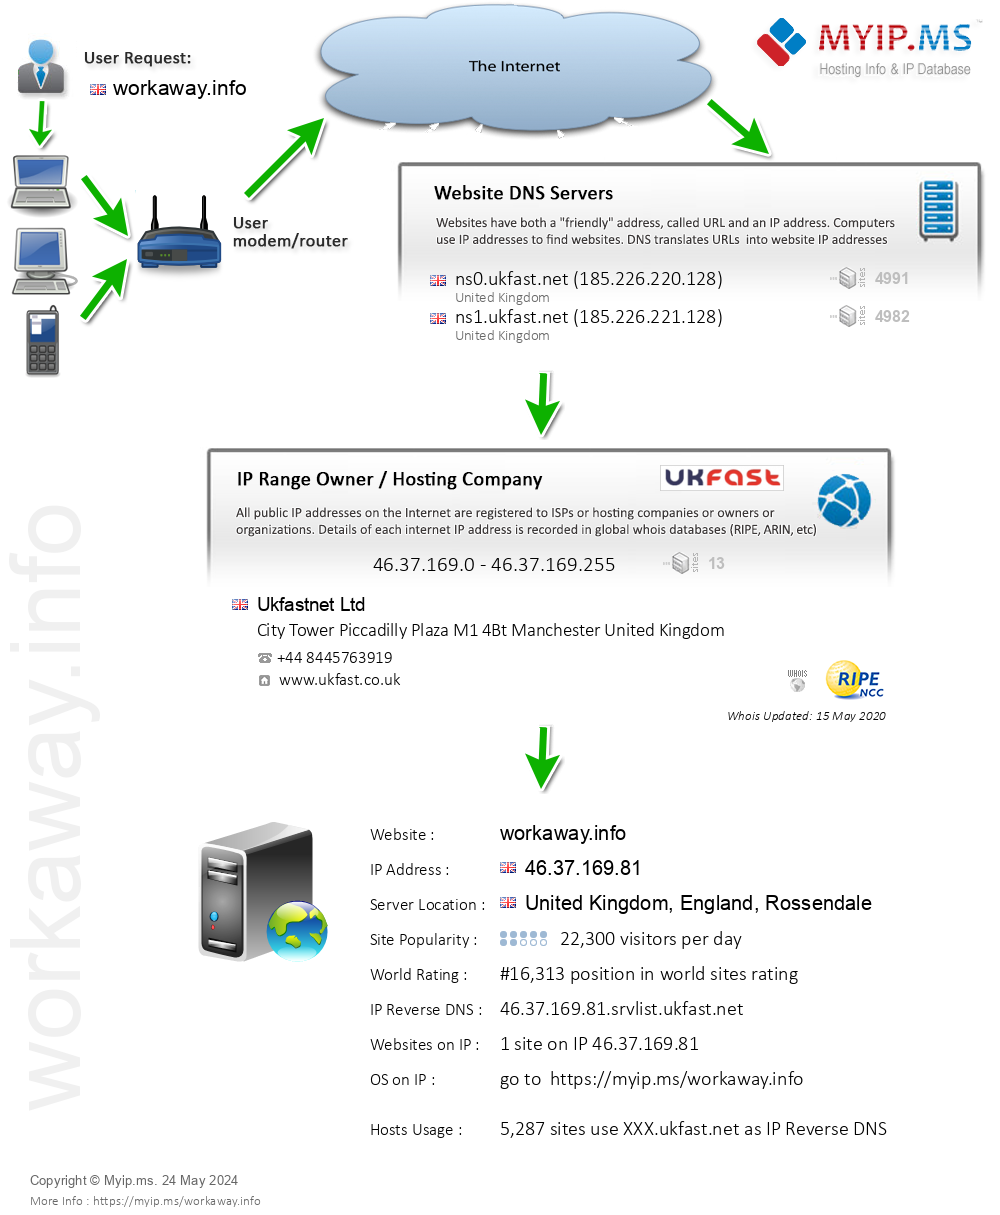 Workaway.info - Website Hosting Visual IP Diagram